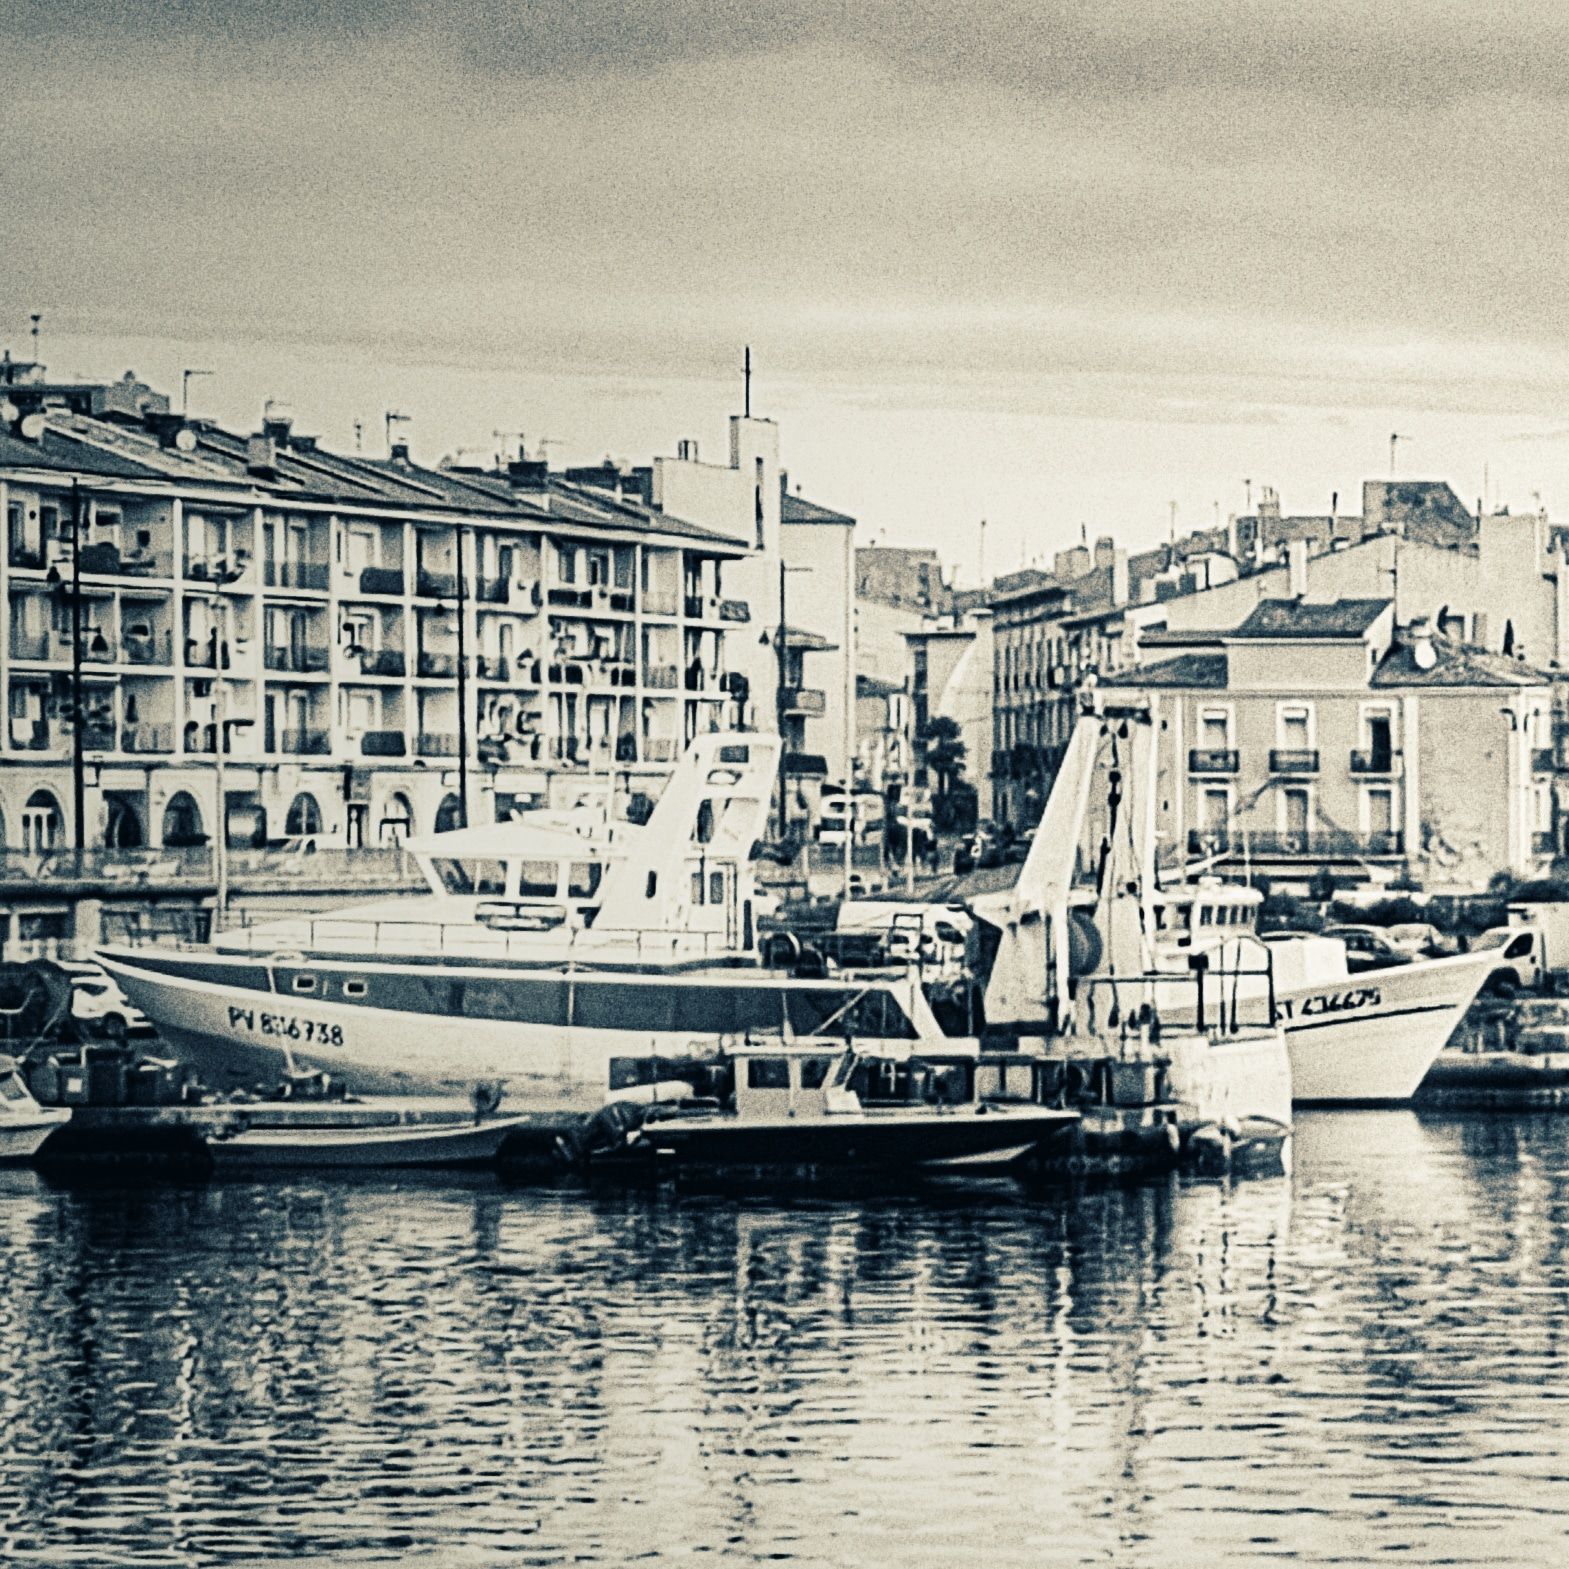 La criée & port de pêche Sète. - Samsung Community